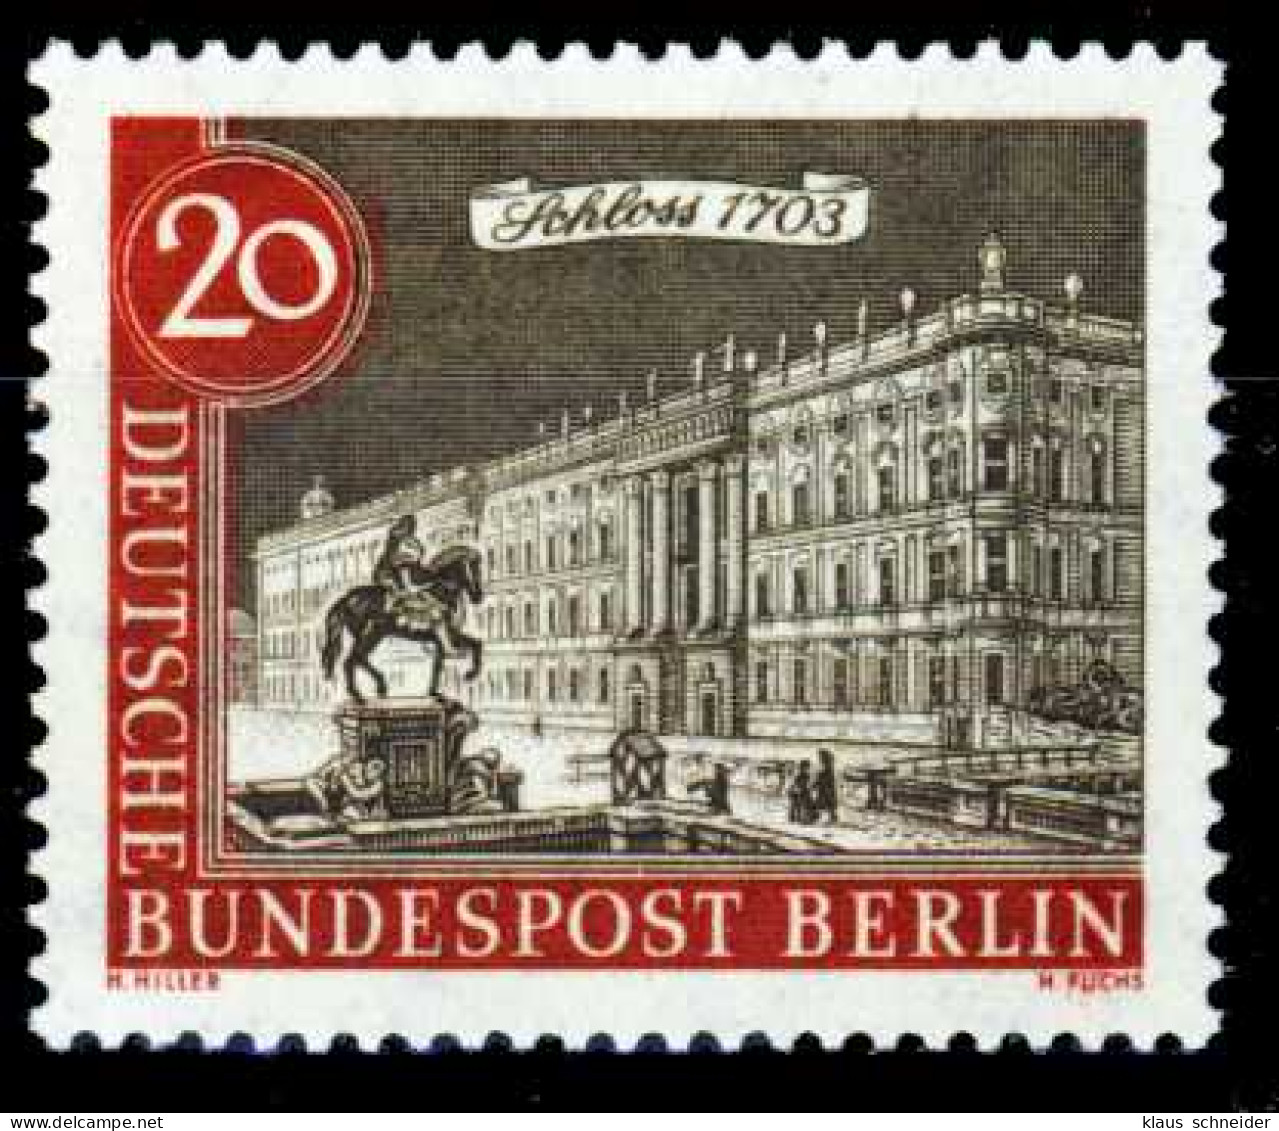 BERLIN 1962 Nr 221 Postfrisch S594D52 - Unused Stamps